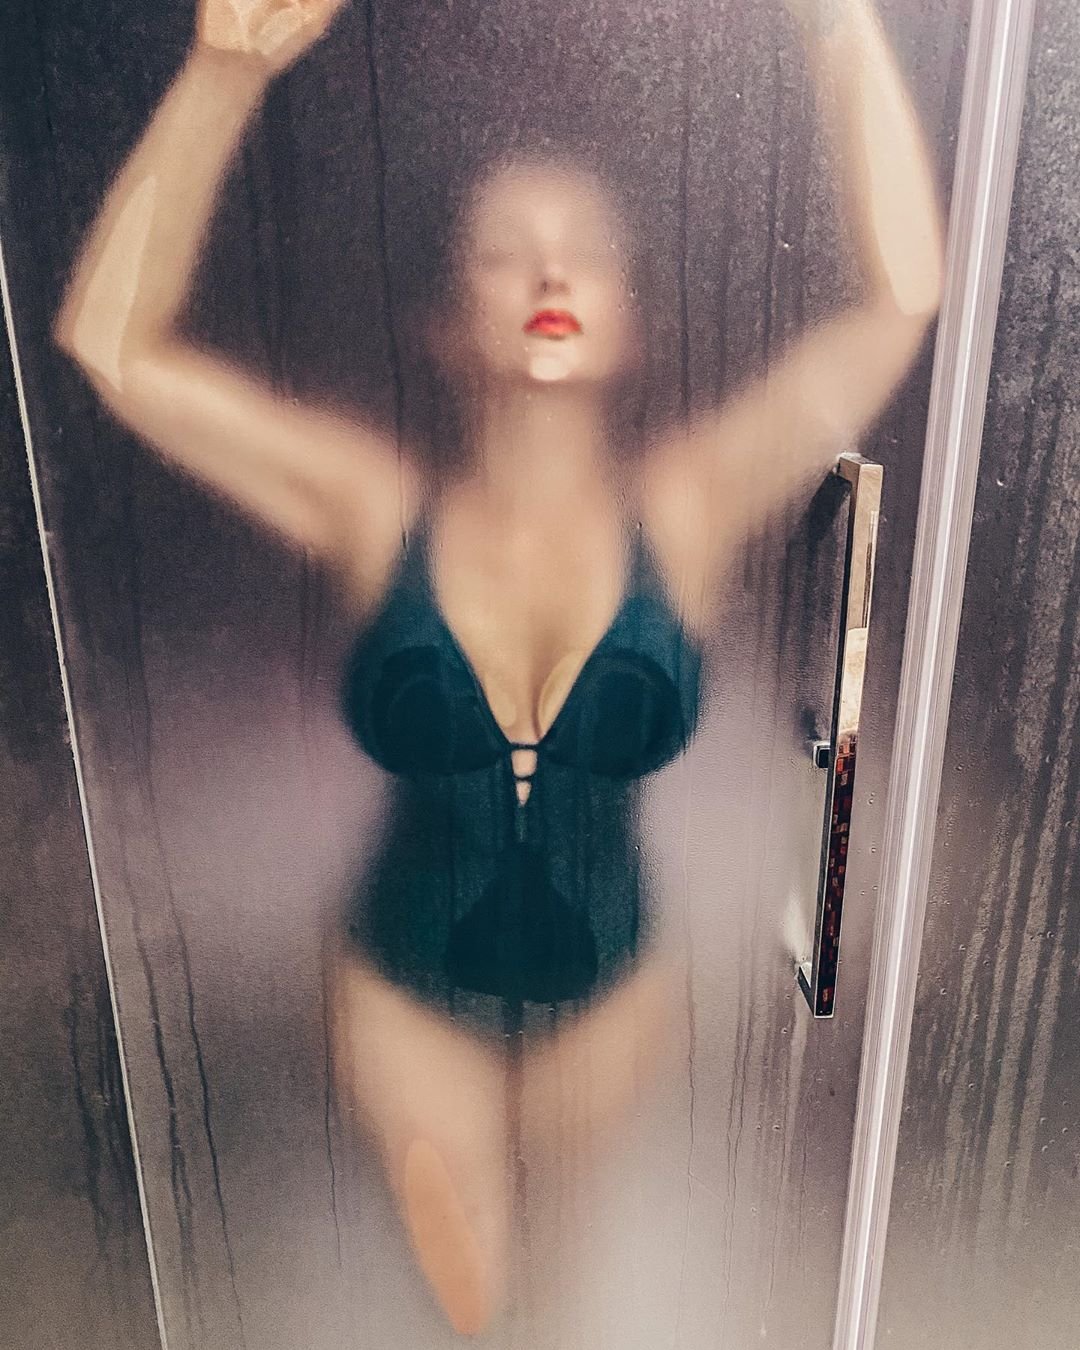 Анфиса Чехова снялась в мокром купальнике в душе